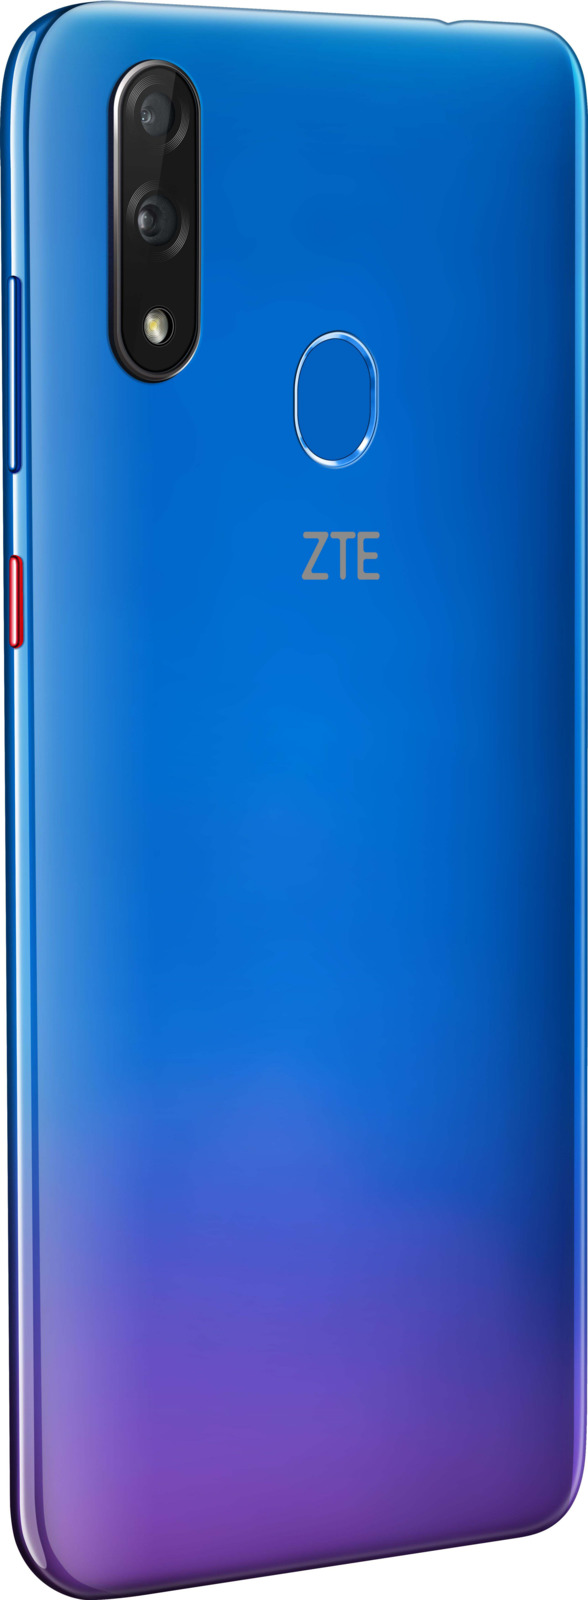 фото Смартфон ZTE Blade V10 4/64GB, фиолетовый